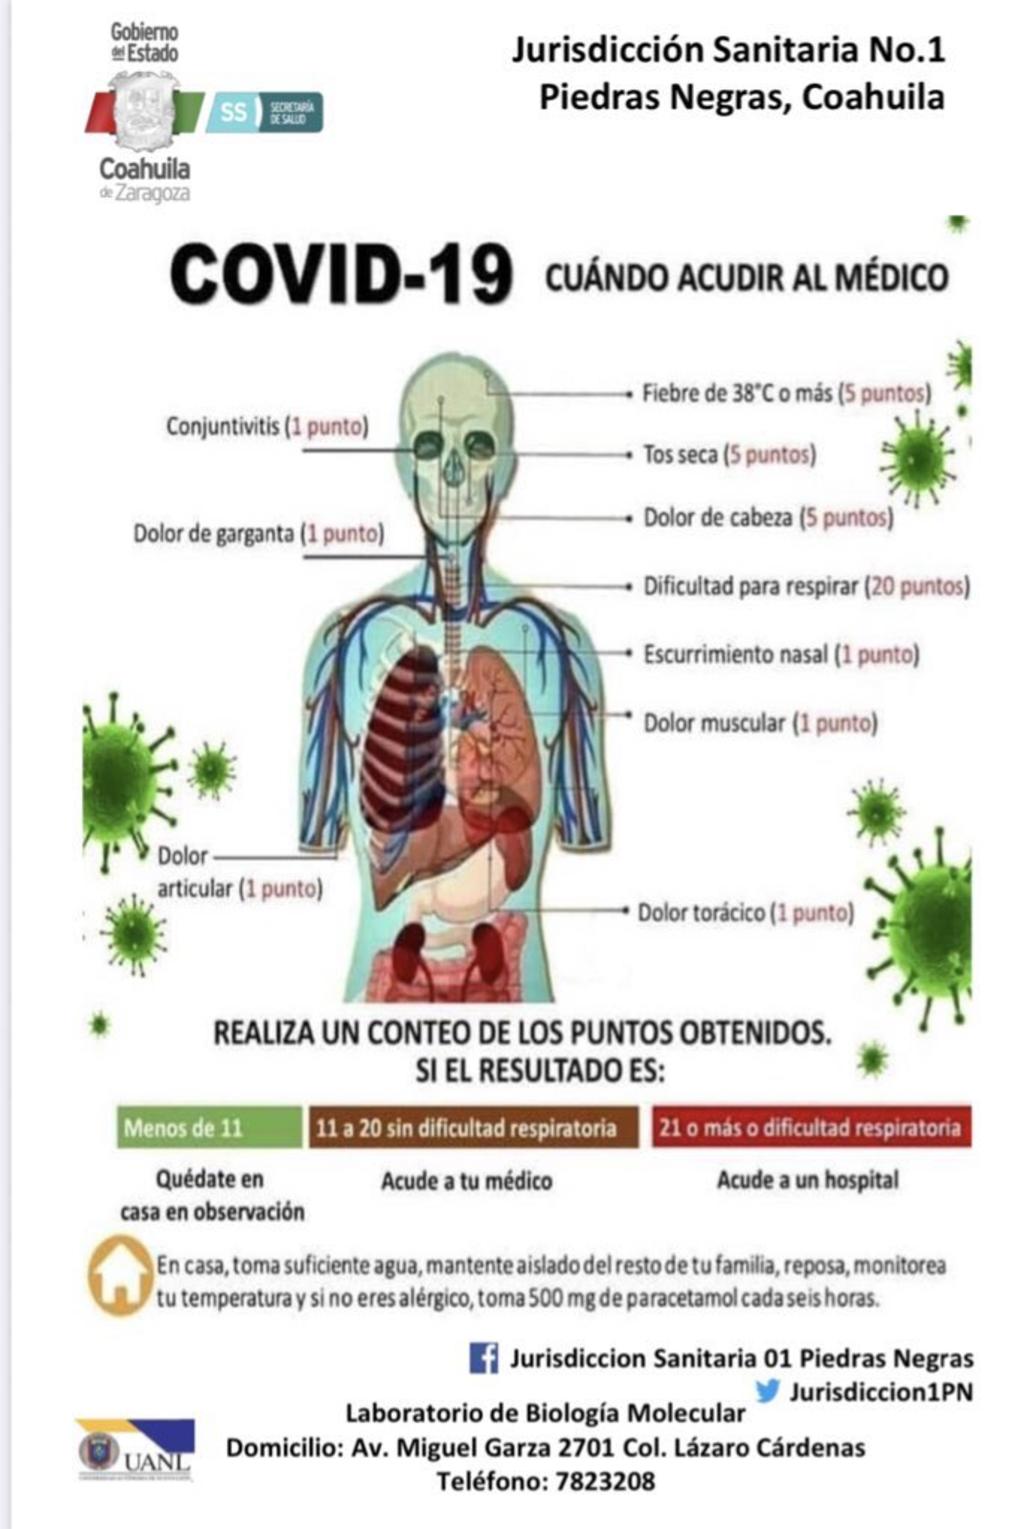 La finalidad es generar conciencia en la población sobre los síntomas relacionados con el COVID-19 y saber qué hacer al presentarse algunos de ellos. 